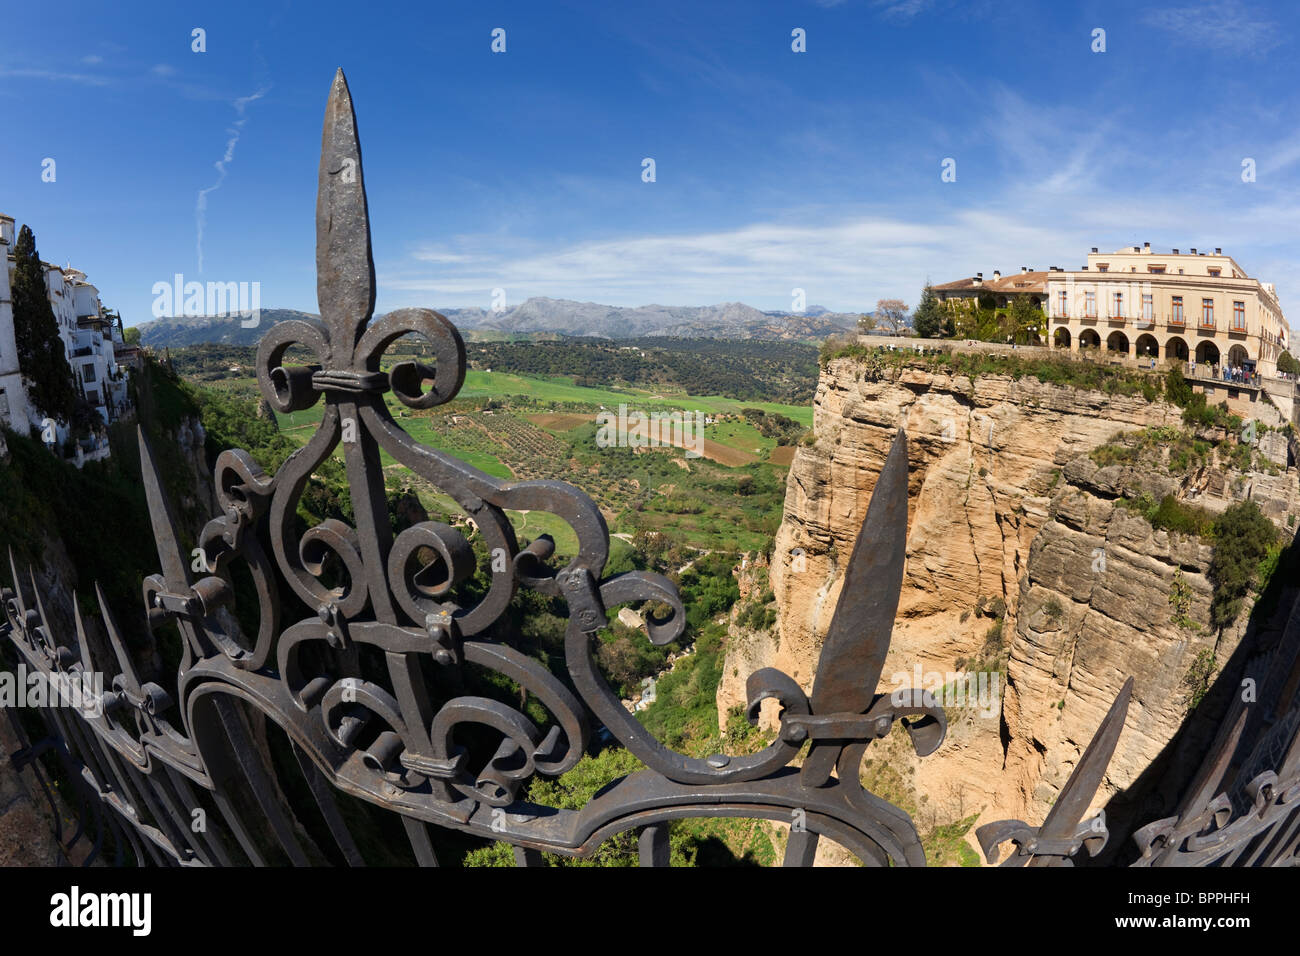 Ronda, Province de Malaga, Andalousie, espagne. La gorge et Parador National. Banque D'Images